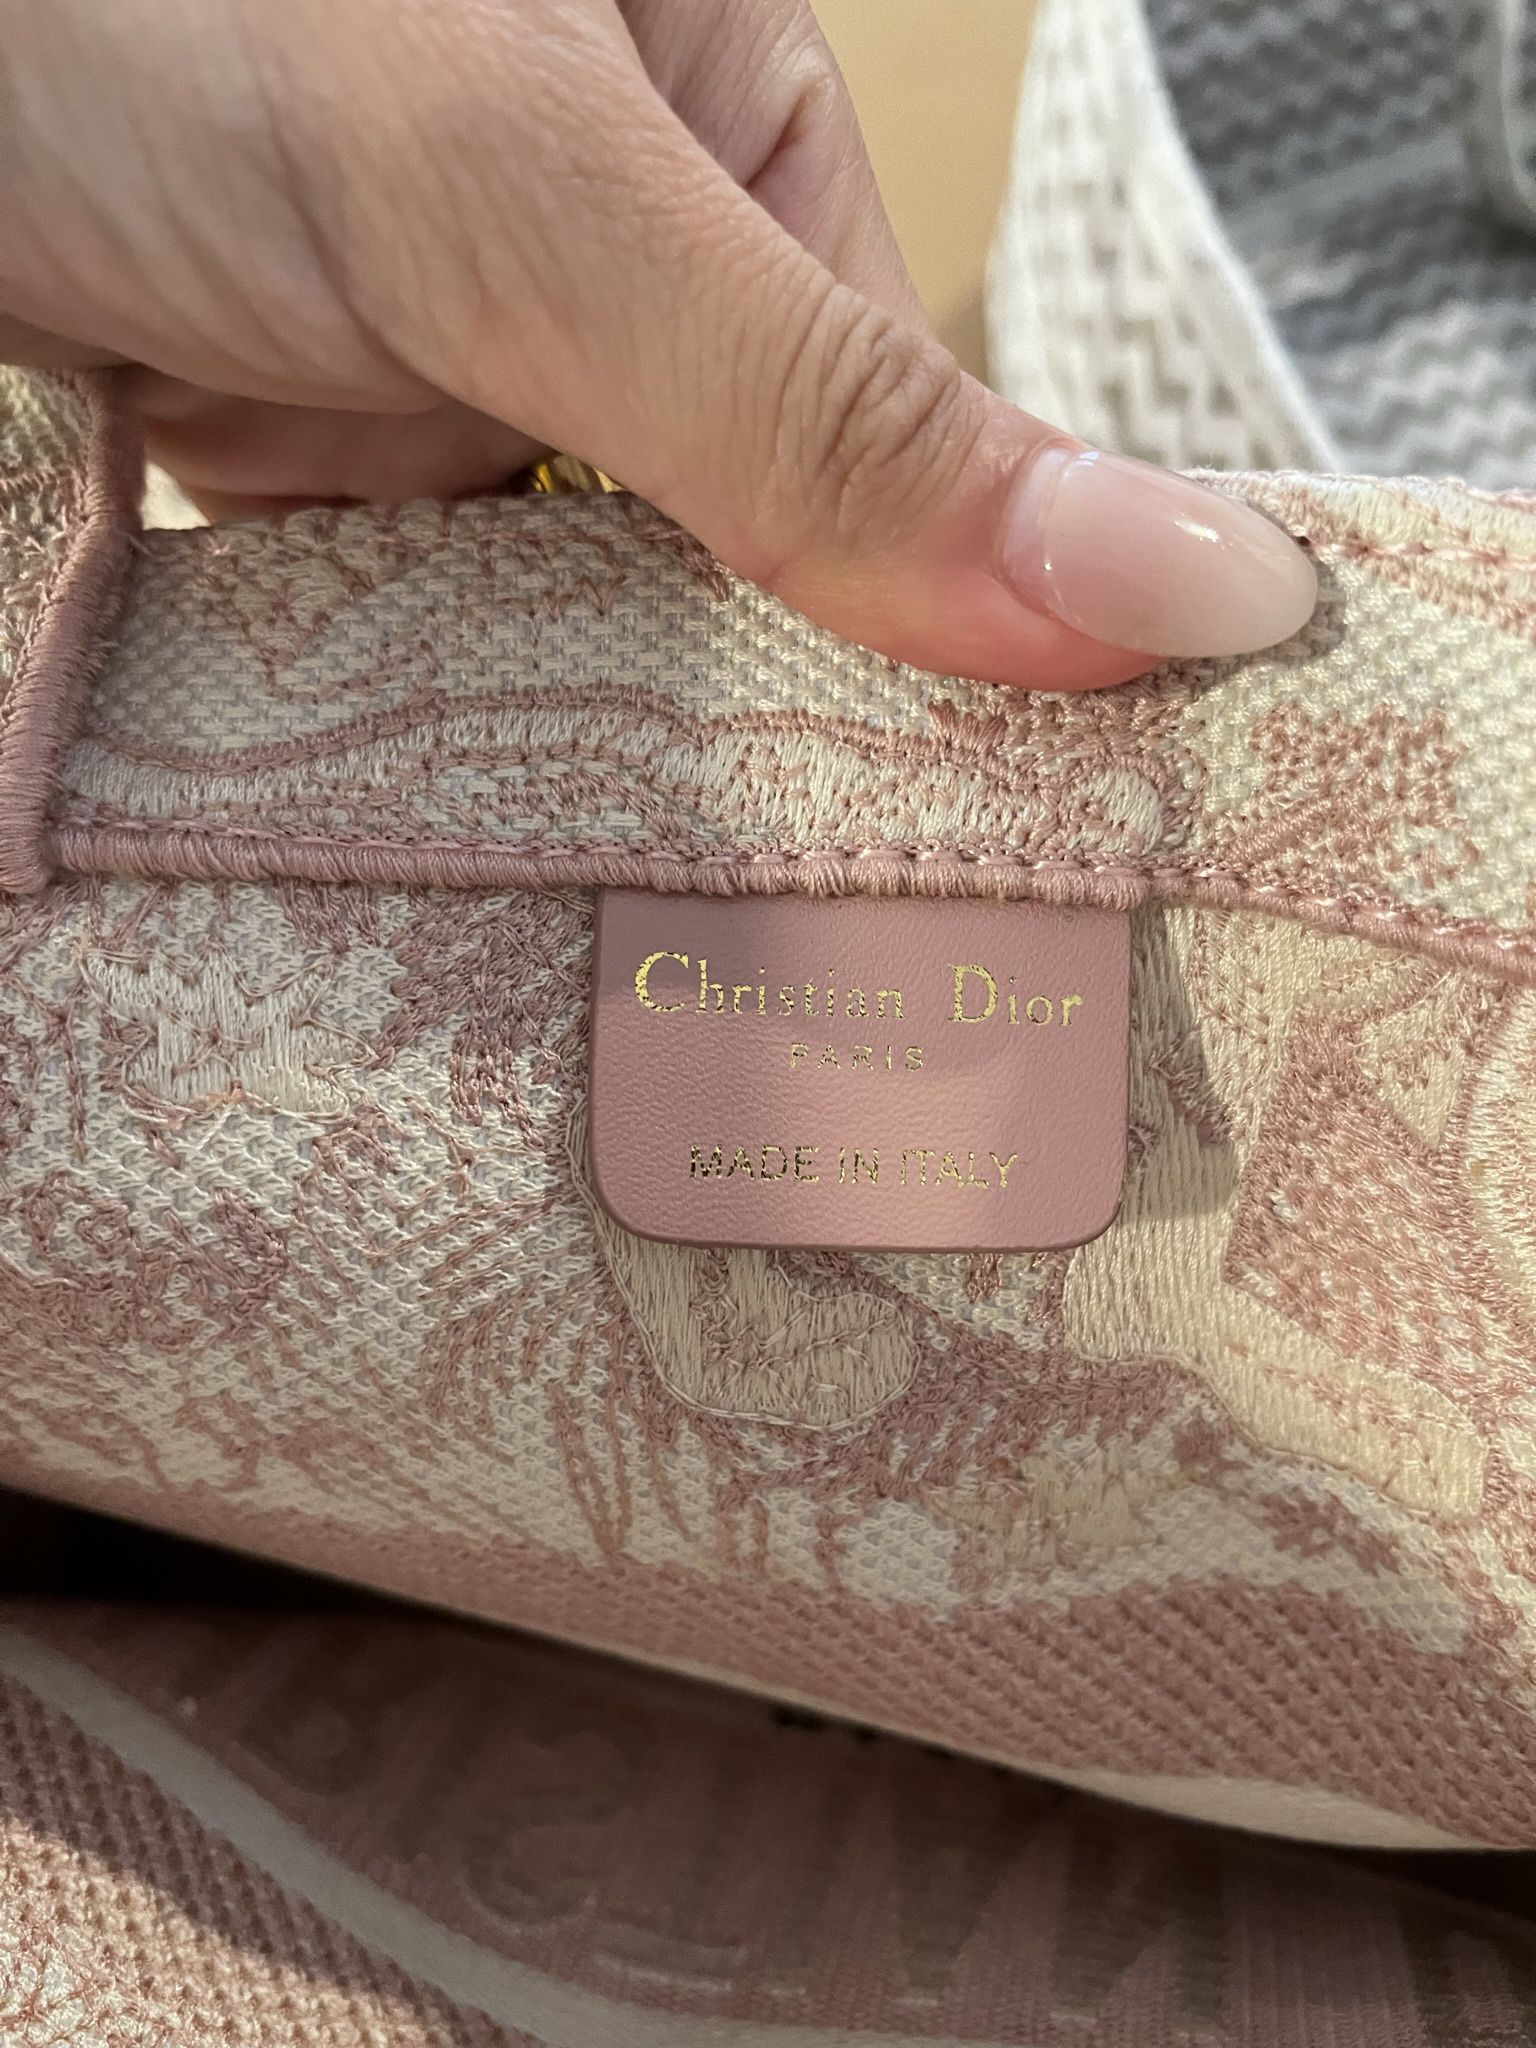 Vintage Christian Dior pink oblique monogram trotter handbag for Sale in  Santa Monica, CA - OfferUp